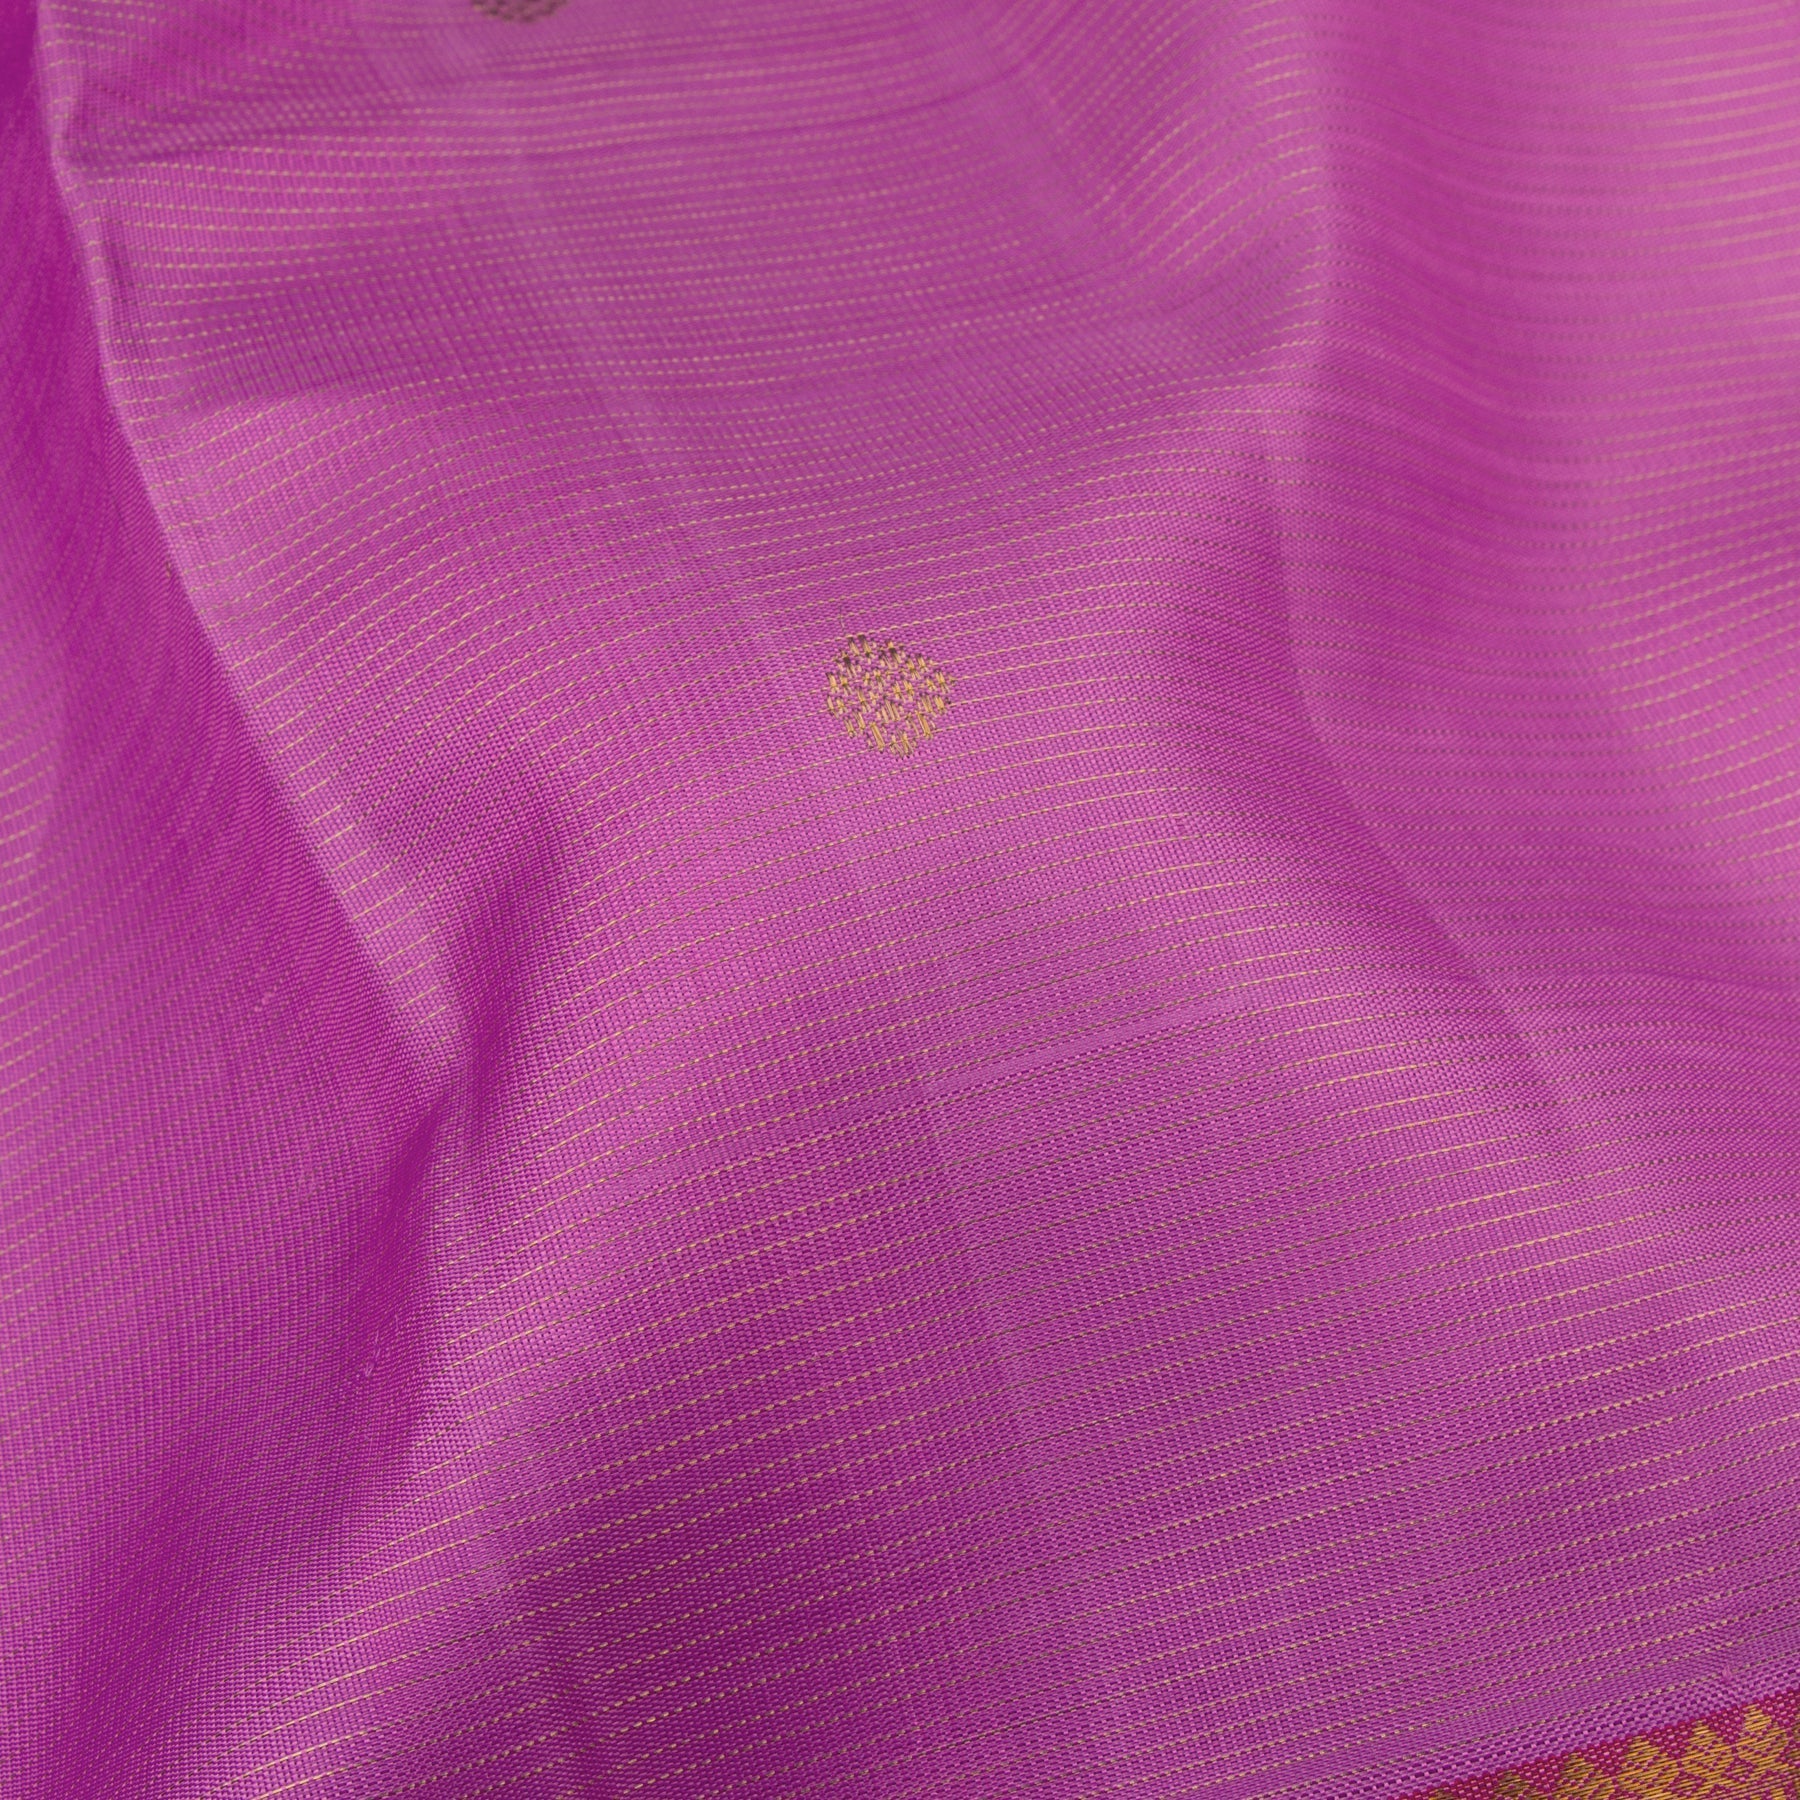 Kanakavalli Kanjivaram Silk Sari 23-110-HS001-00999 - Fabric View